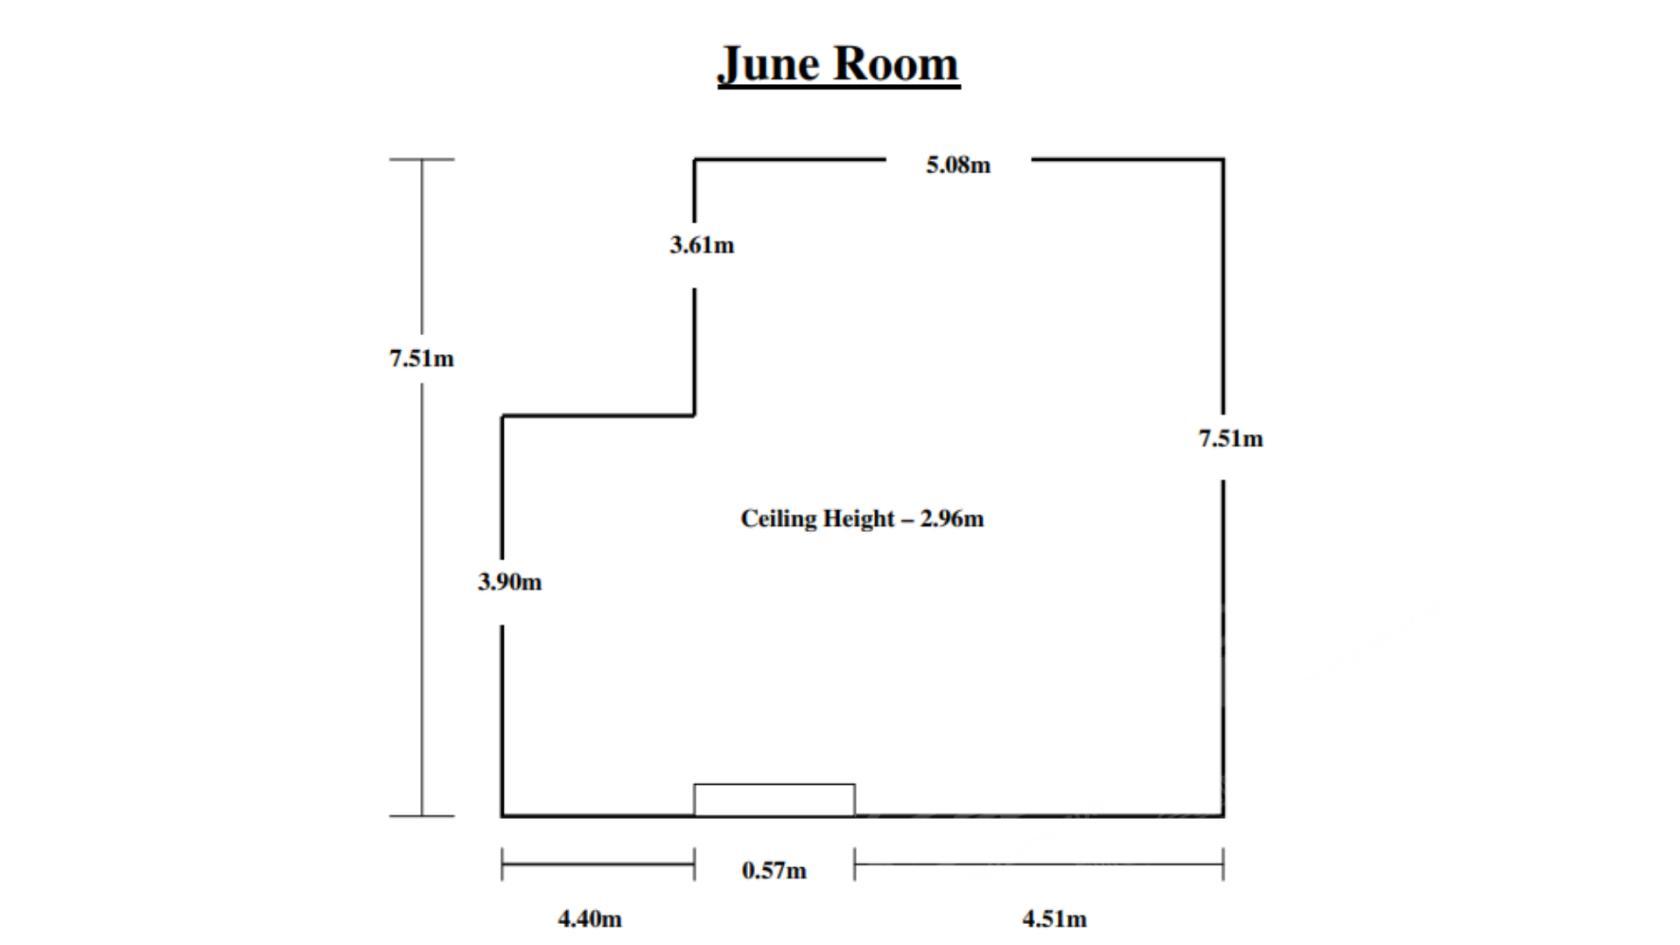 June Room